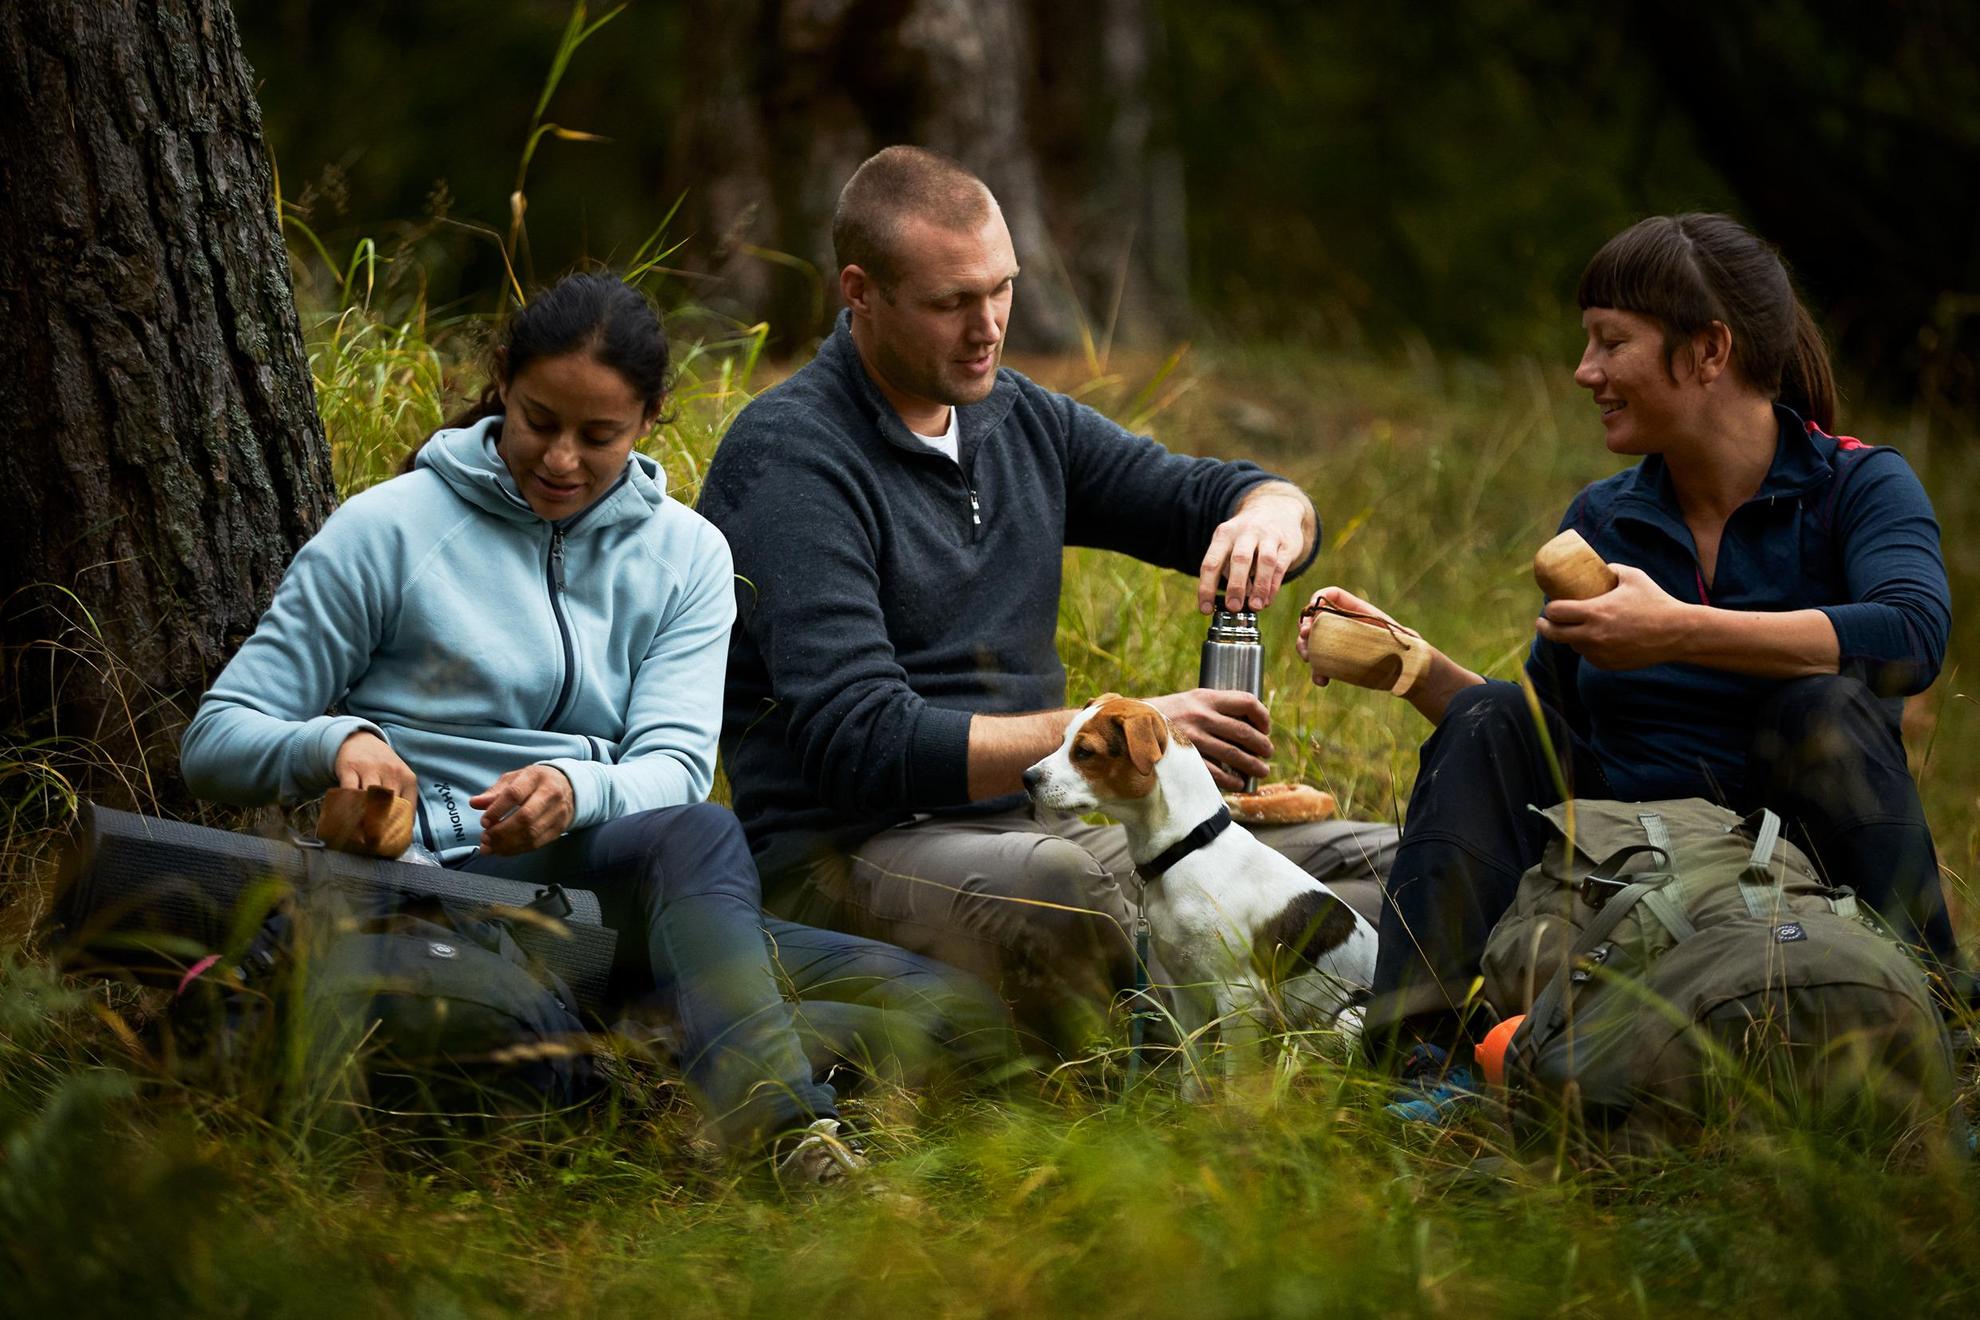 Drie personen zitten op de grond in een bos en drinken koffie uit een thermos.